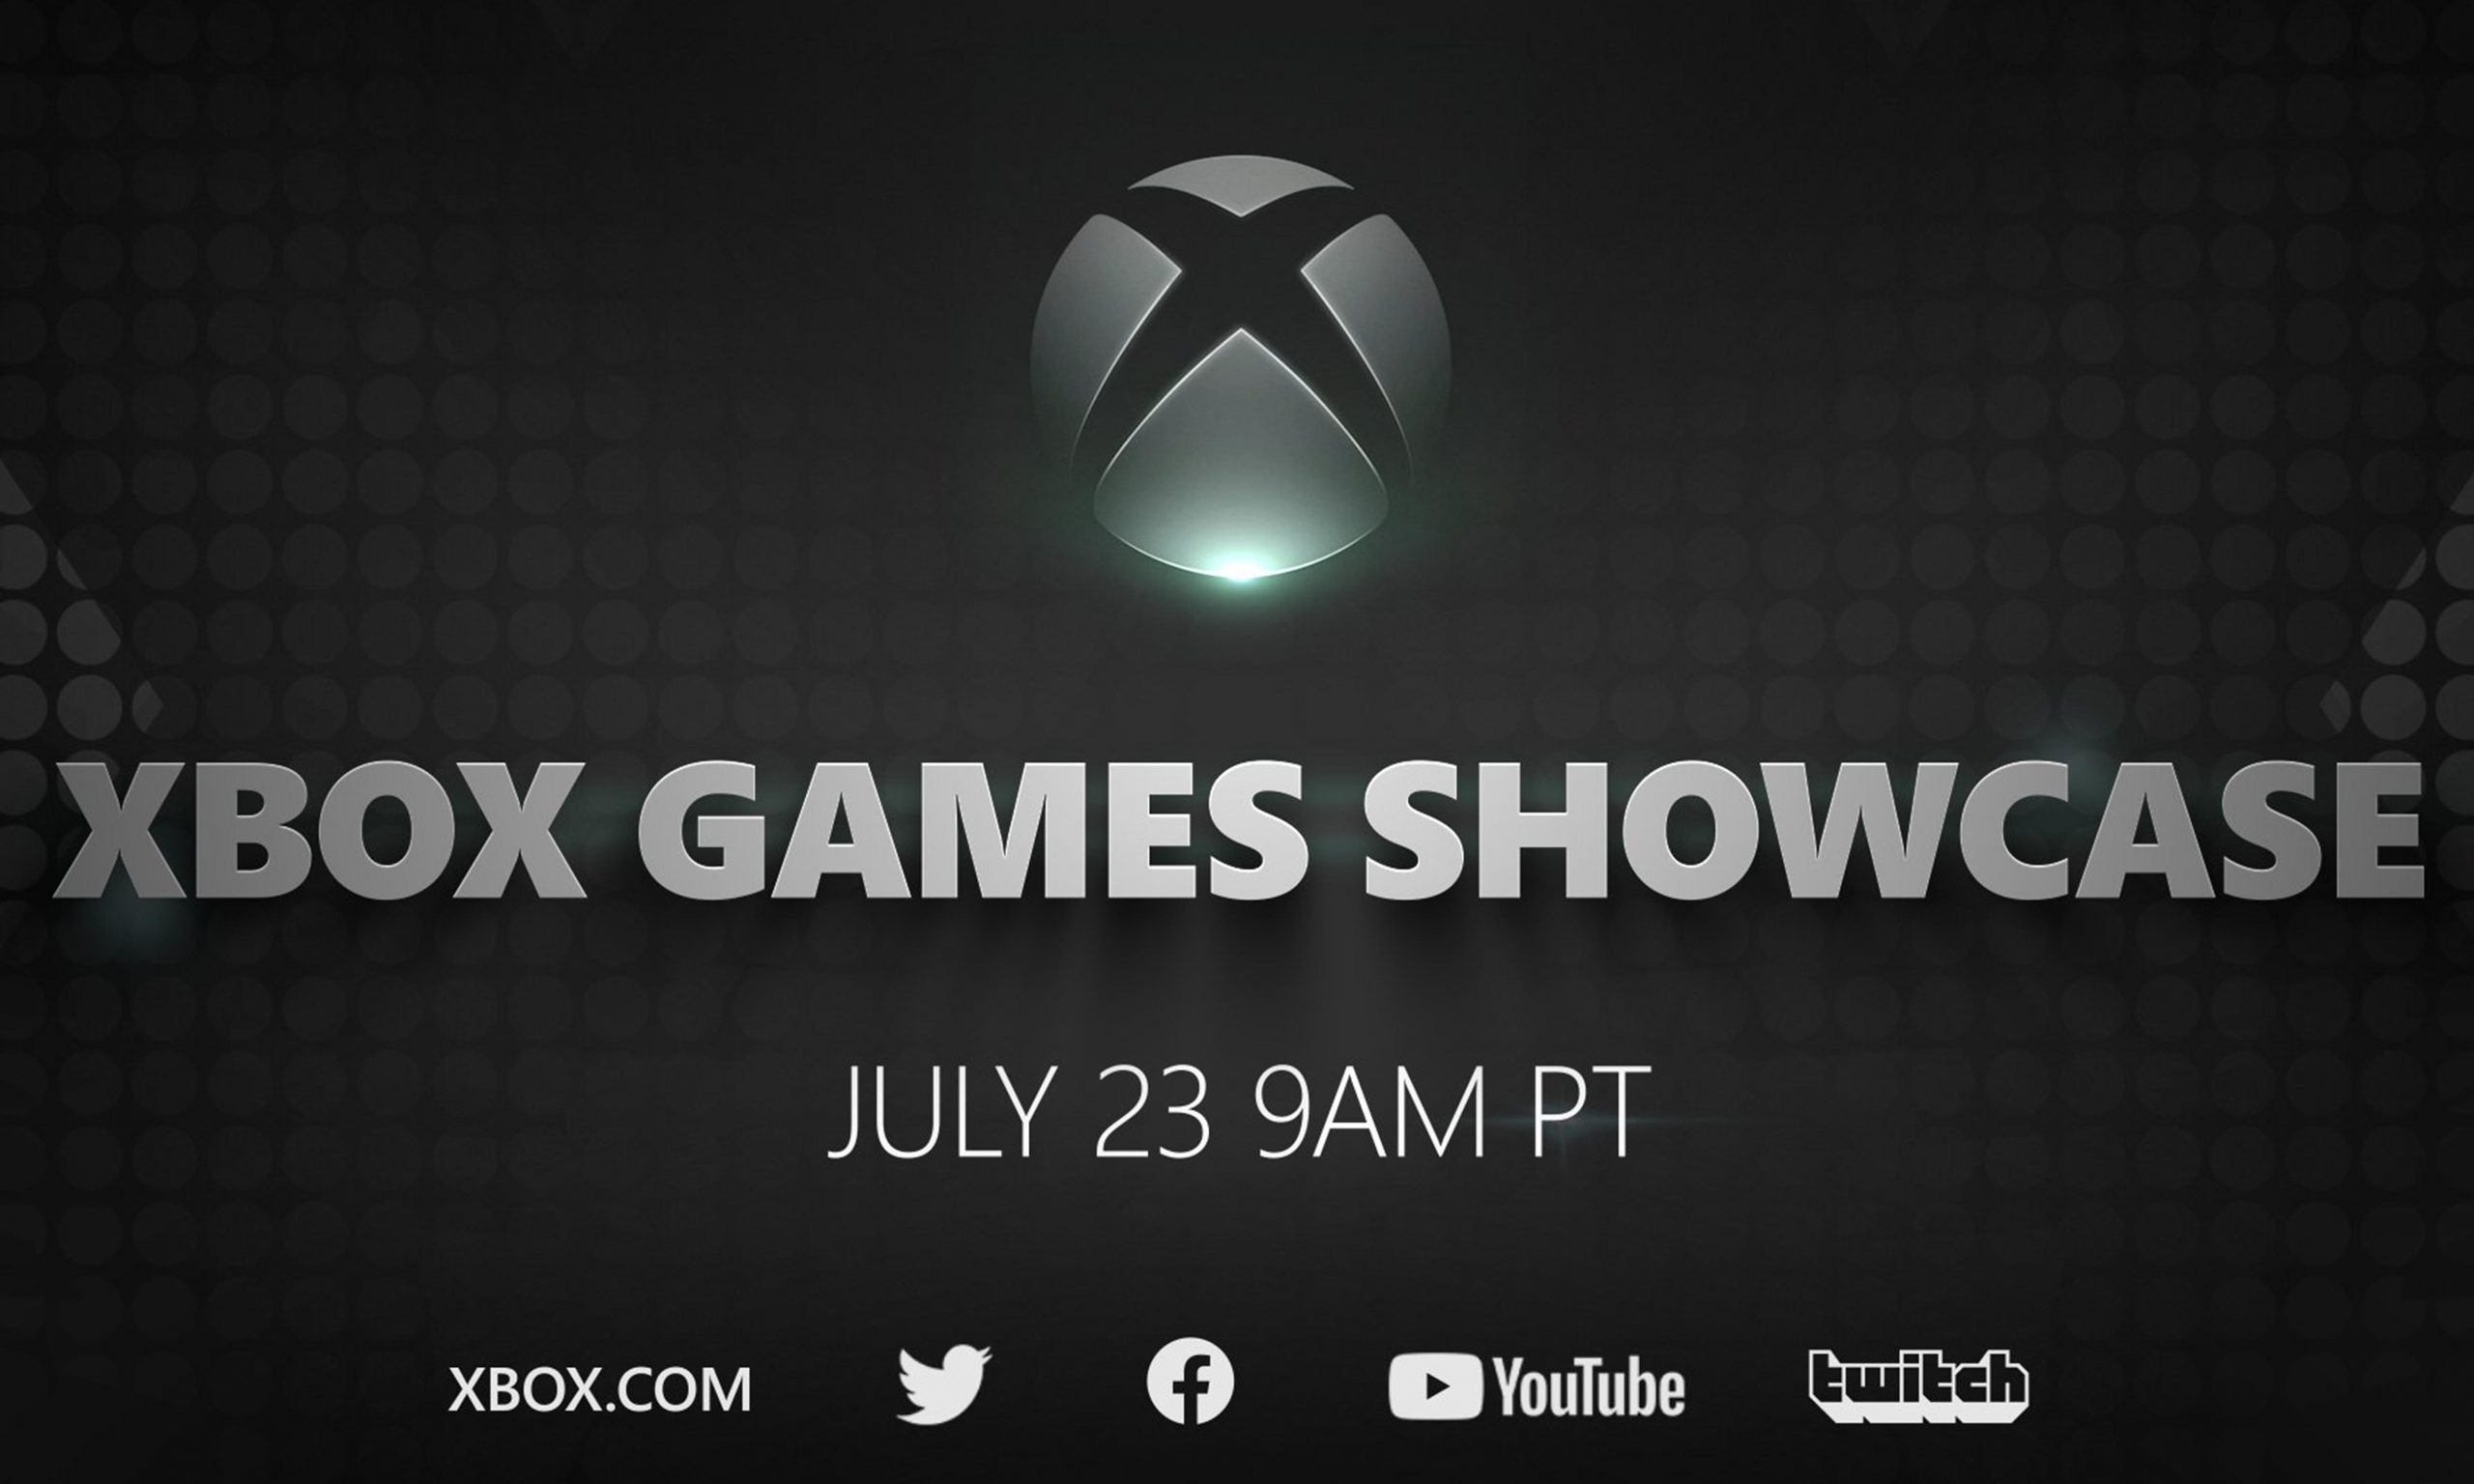 微软宣布 7 月 23 日举办 Xbox Series X 游戏介绍会